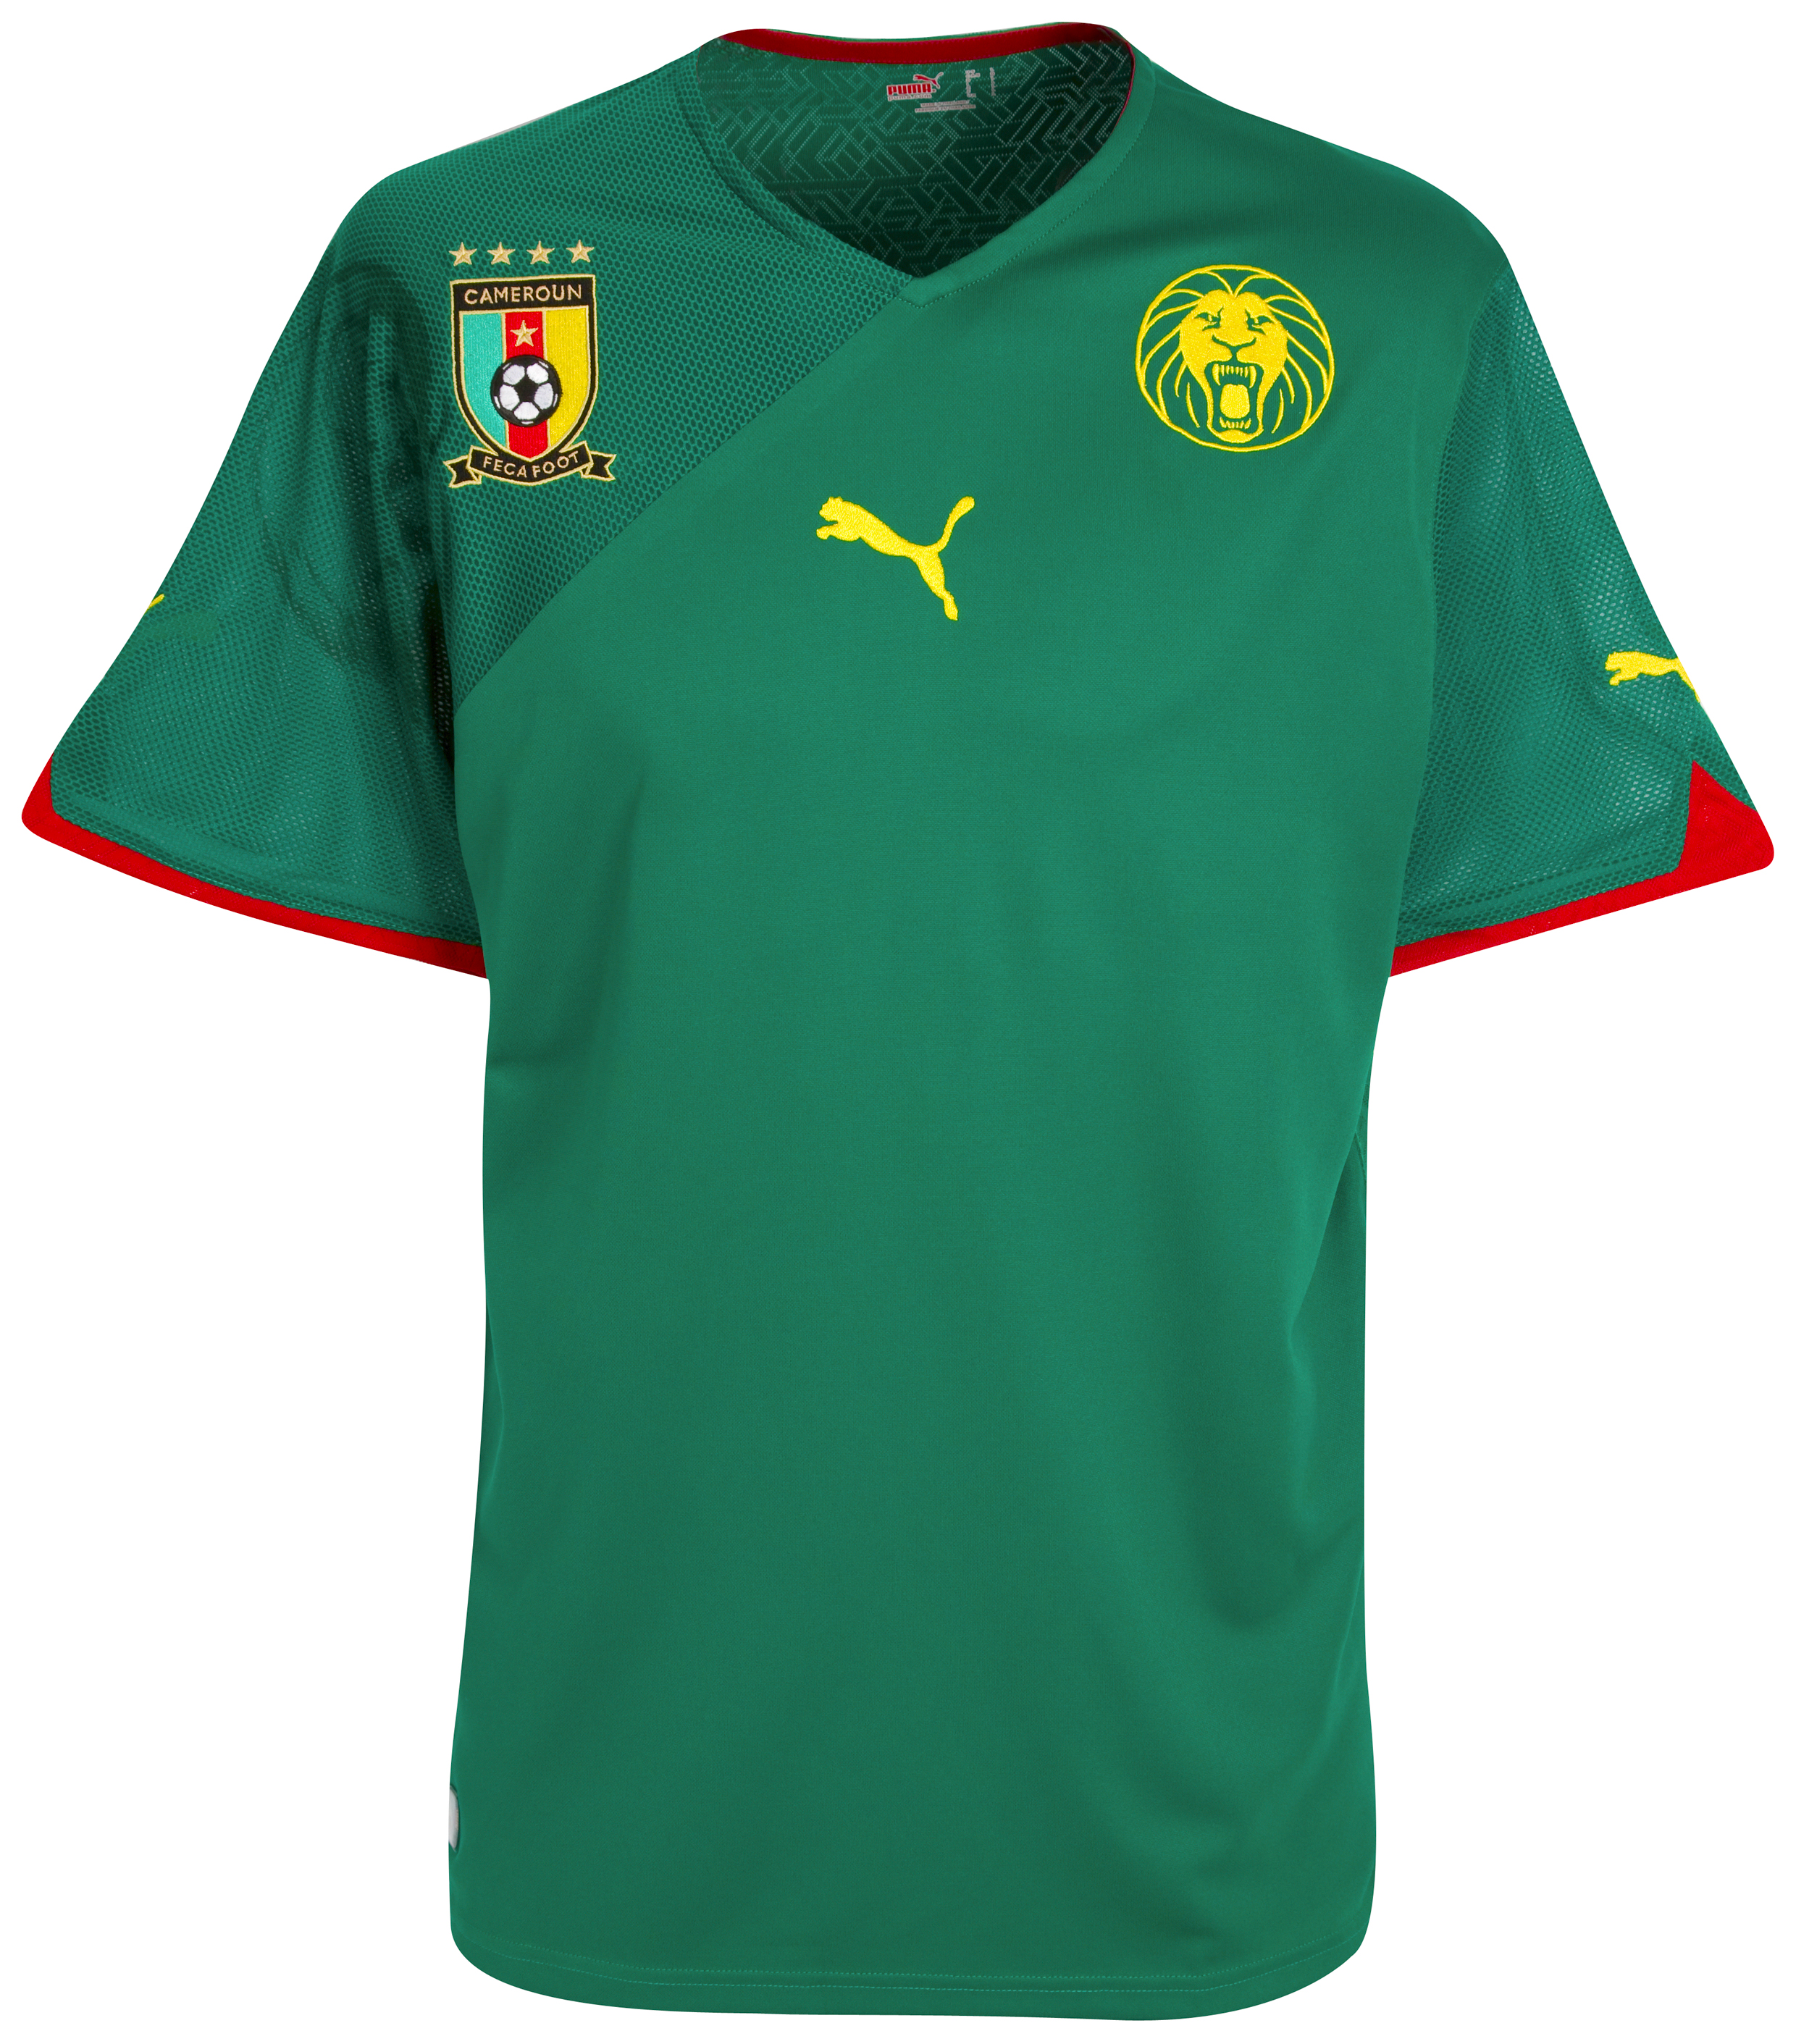 ملابس المنتخبات لكأس العالم2010م Kb-60872